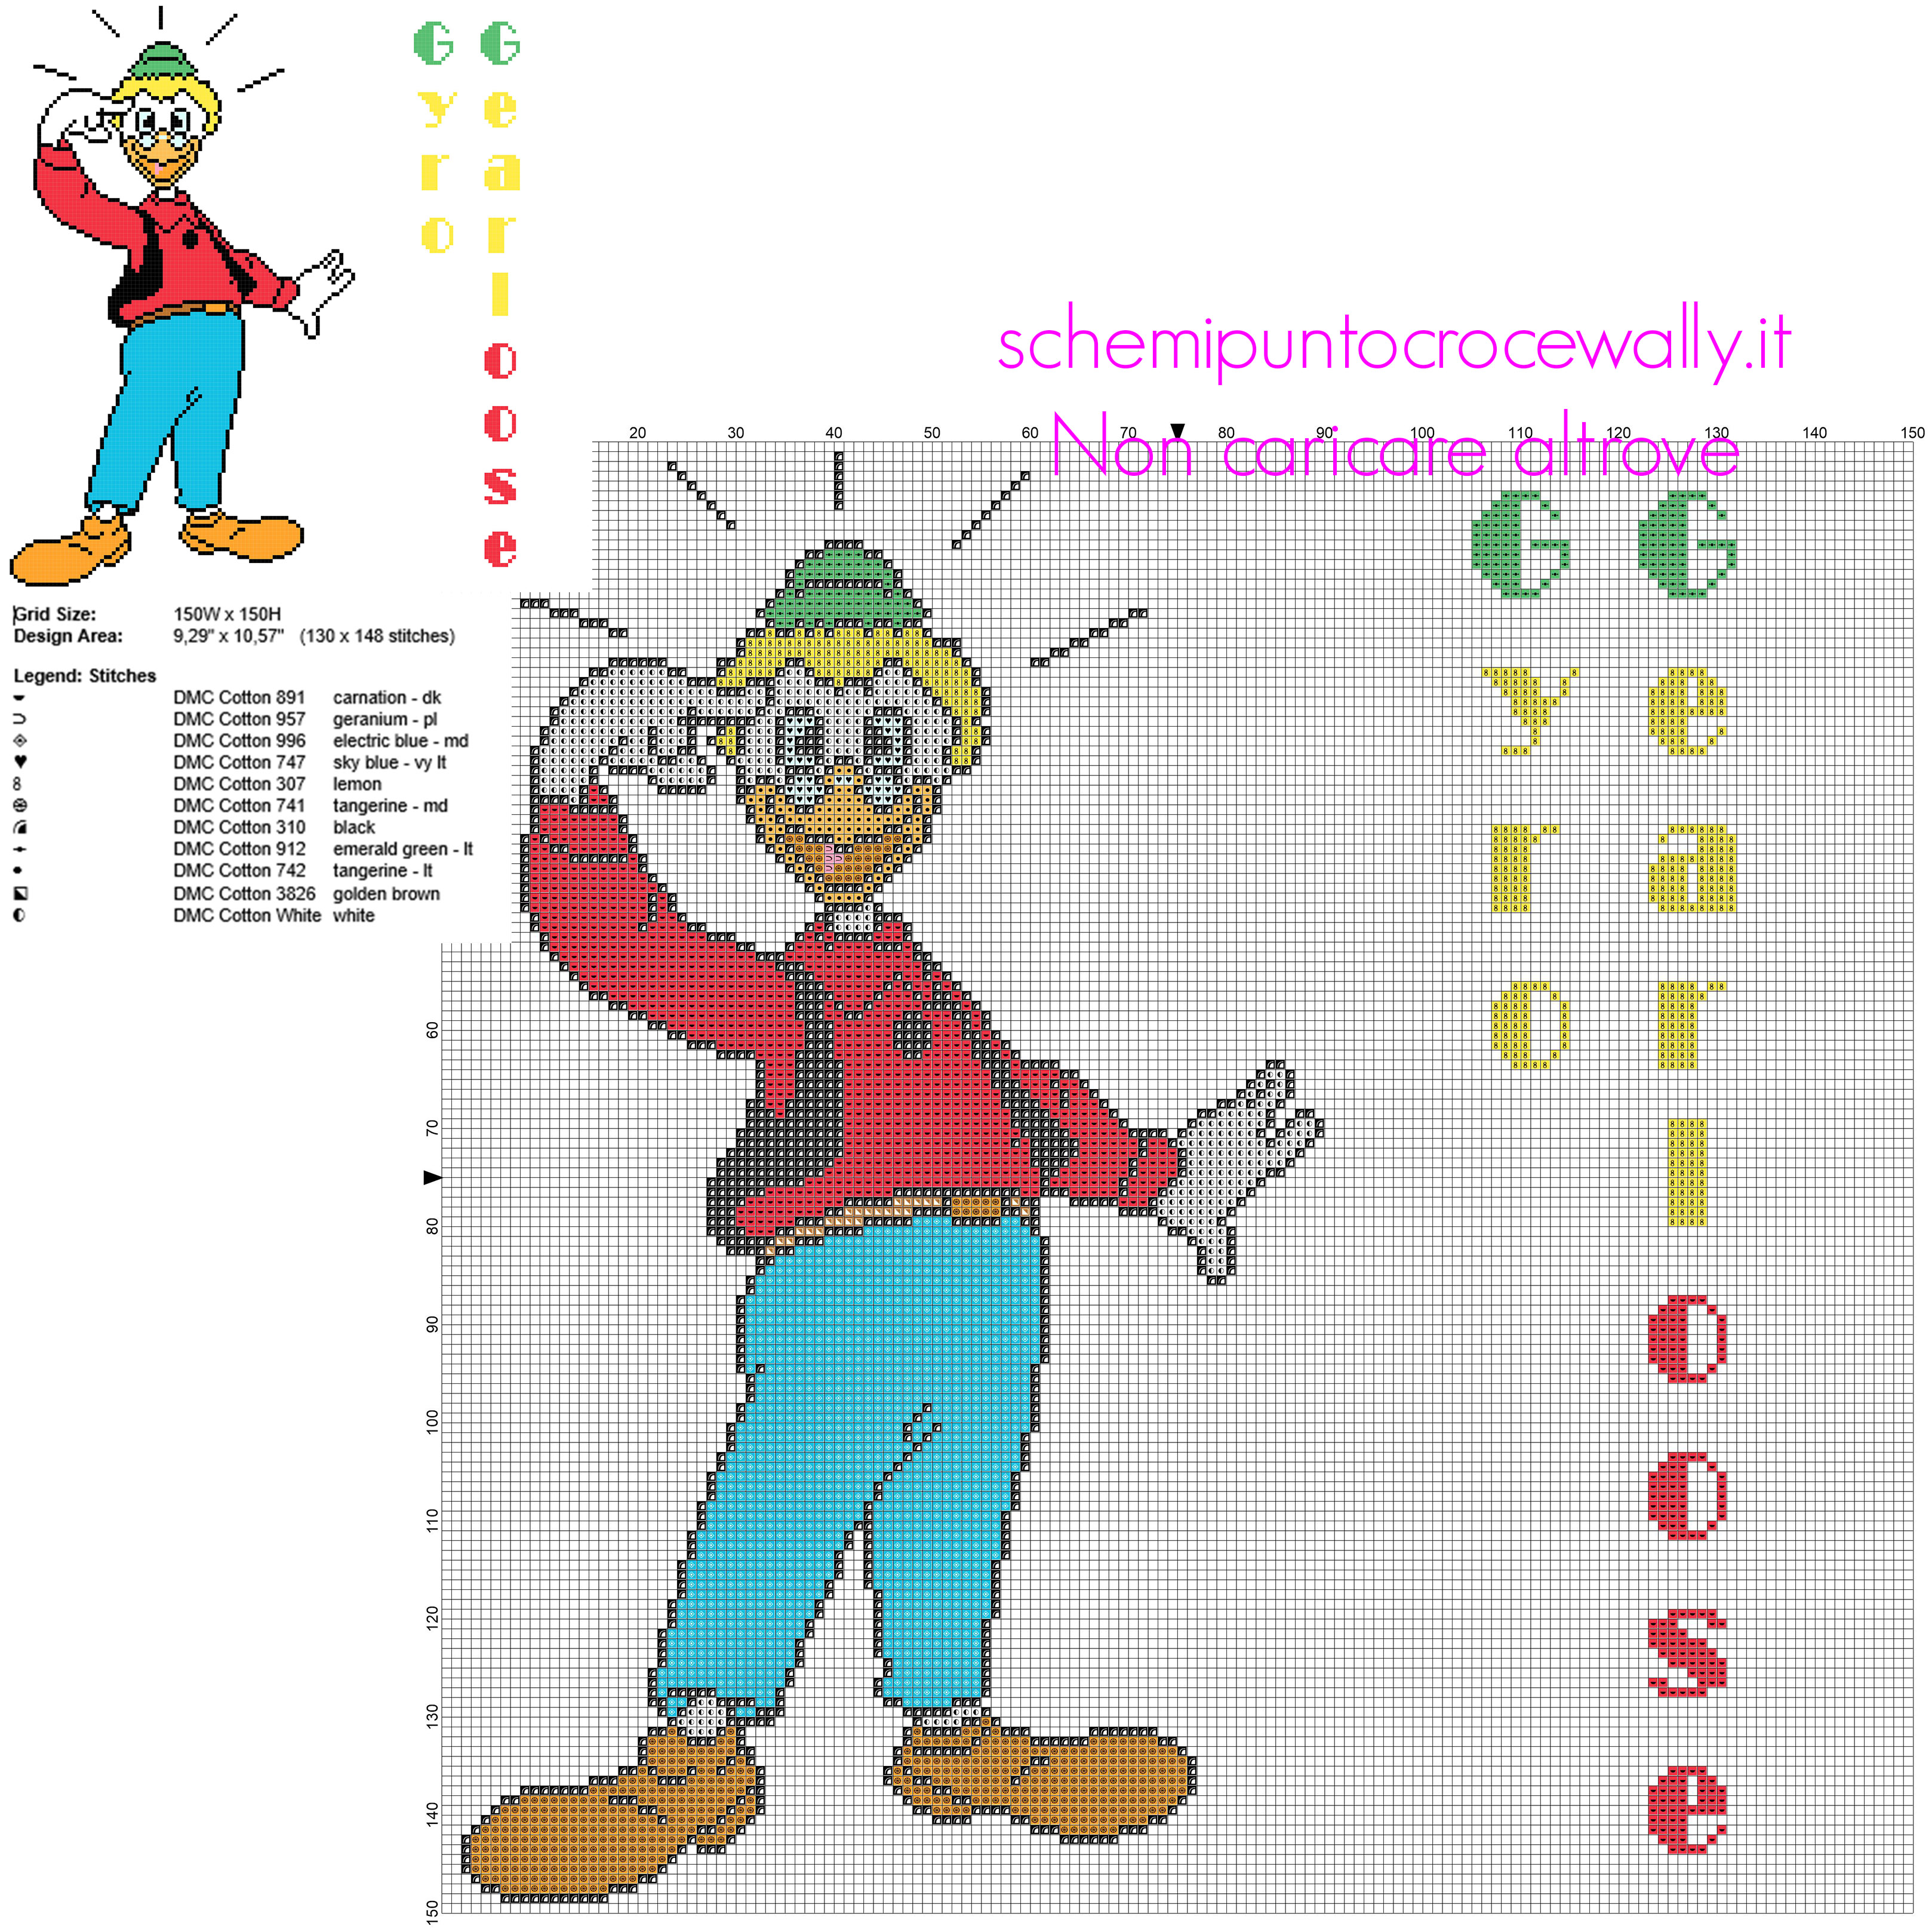 Archimede Pitagorico personaggio Disney Topolino schema punto croce grande circa 150 crocette